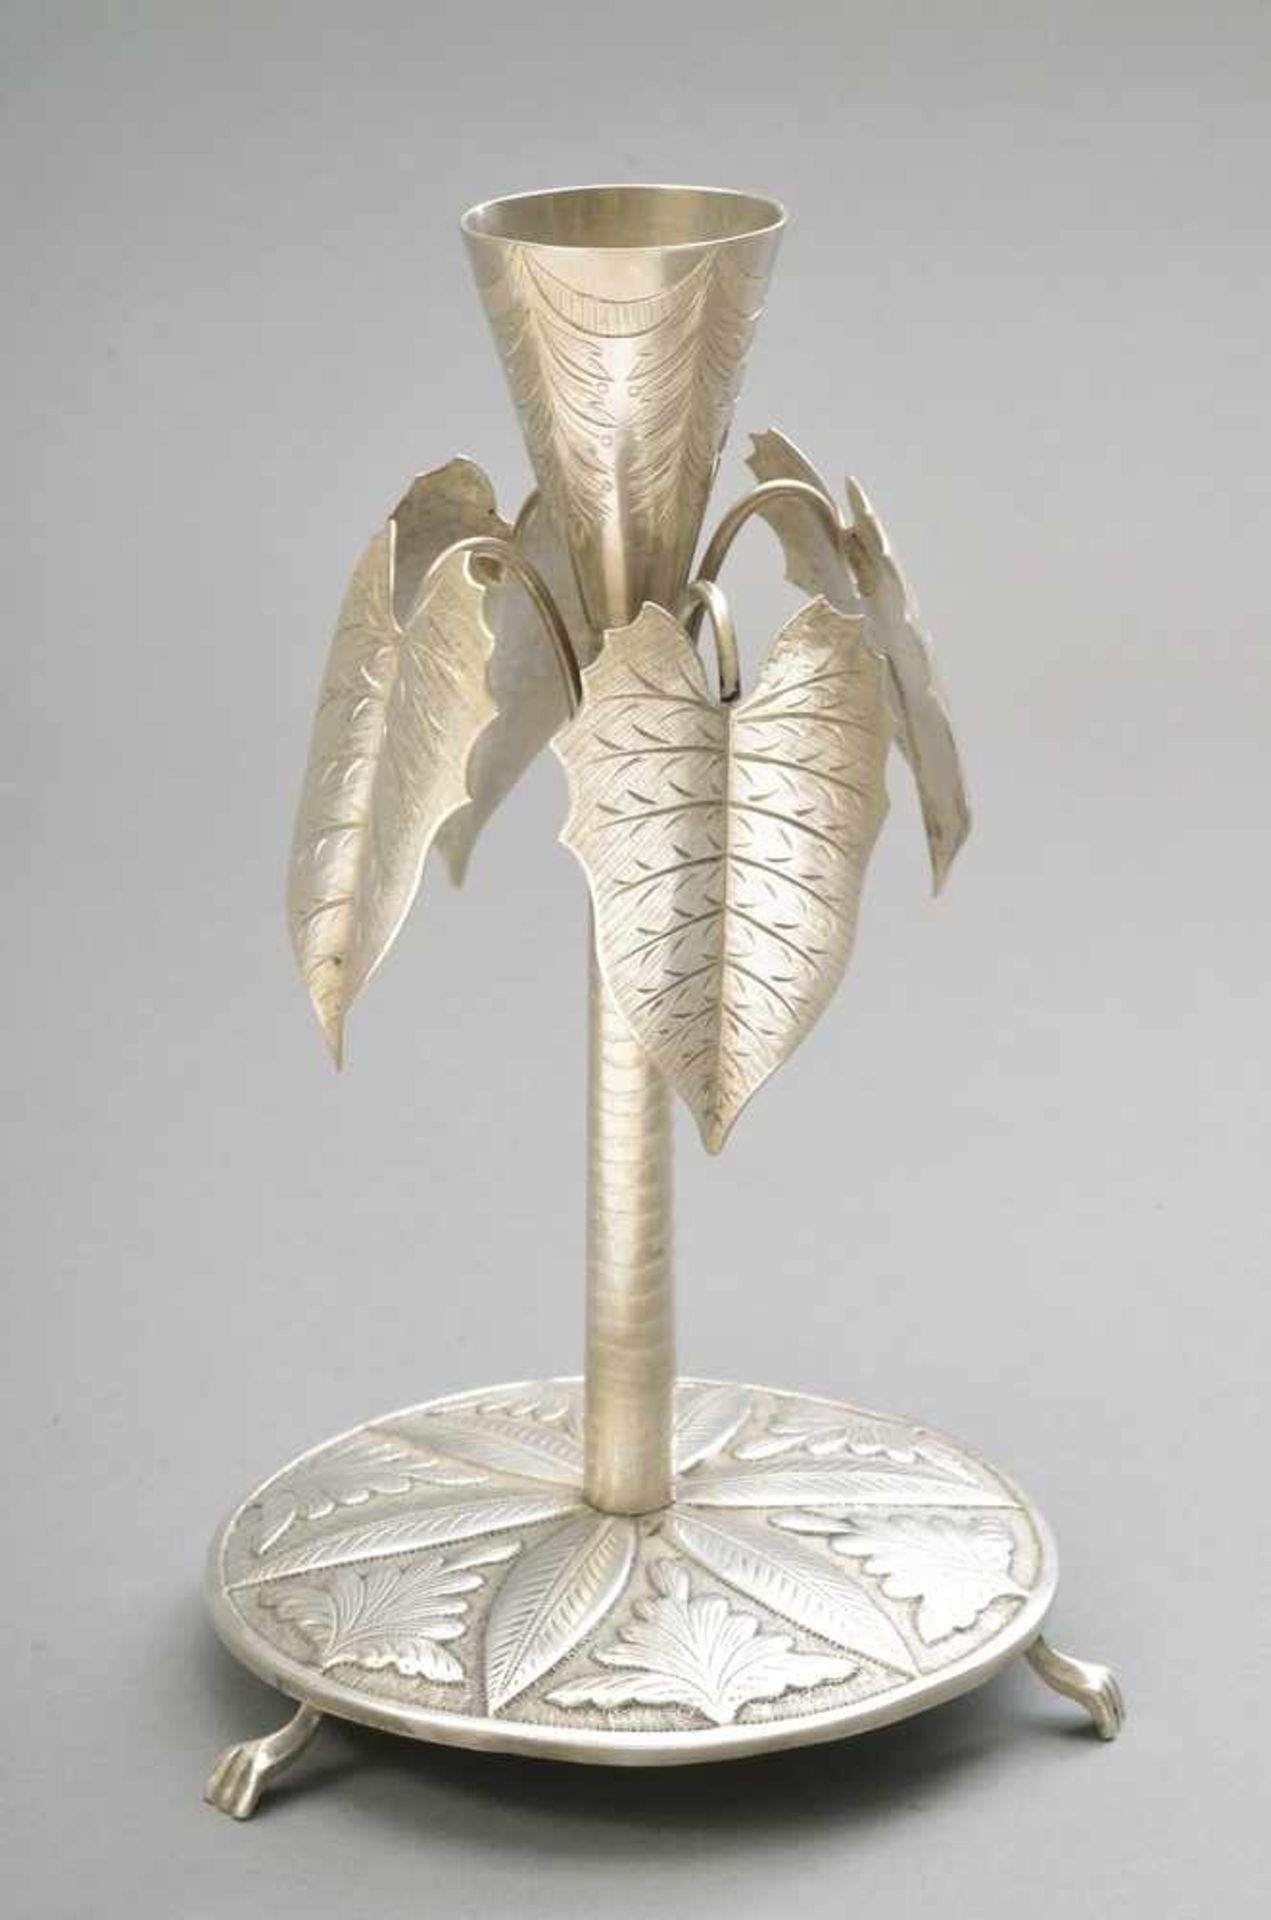 Paliteiro "Palme", Ende 19.Jh., Silber (ungepunzt), 214g, H. 19,5cm, kl. Druckstellen